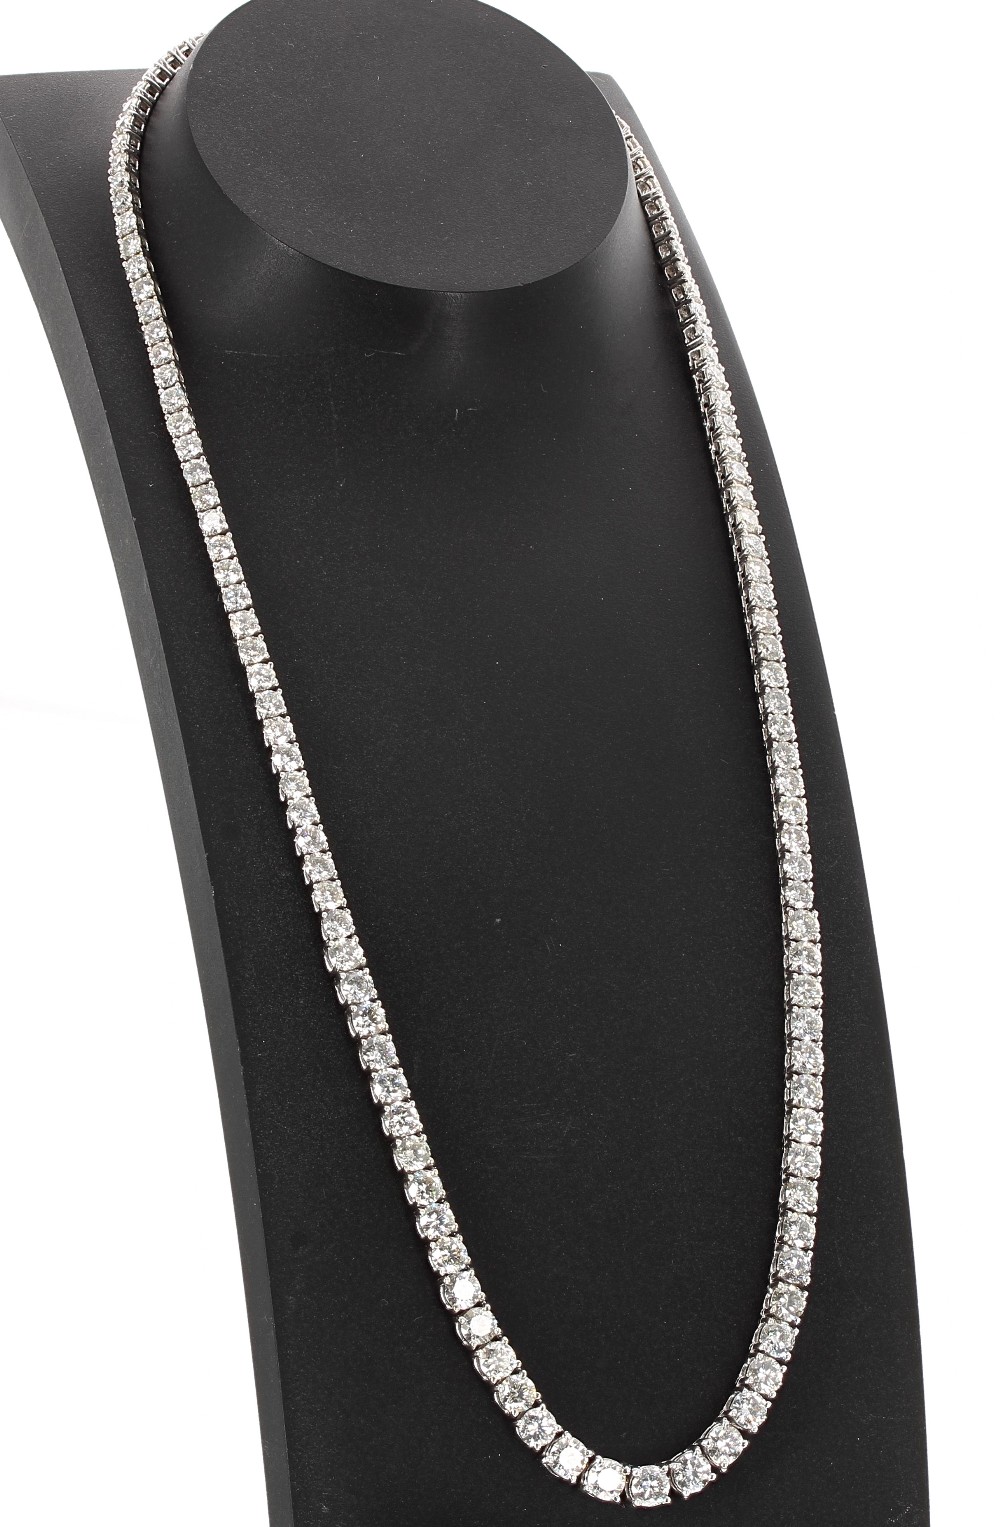 Fine and impressive 18ct white gold Riviére graduated diamond line necklace, round brilliant-cut